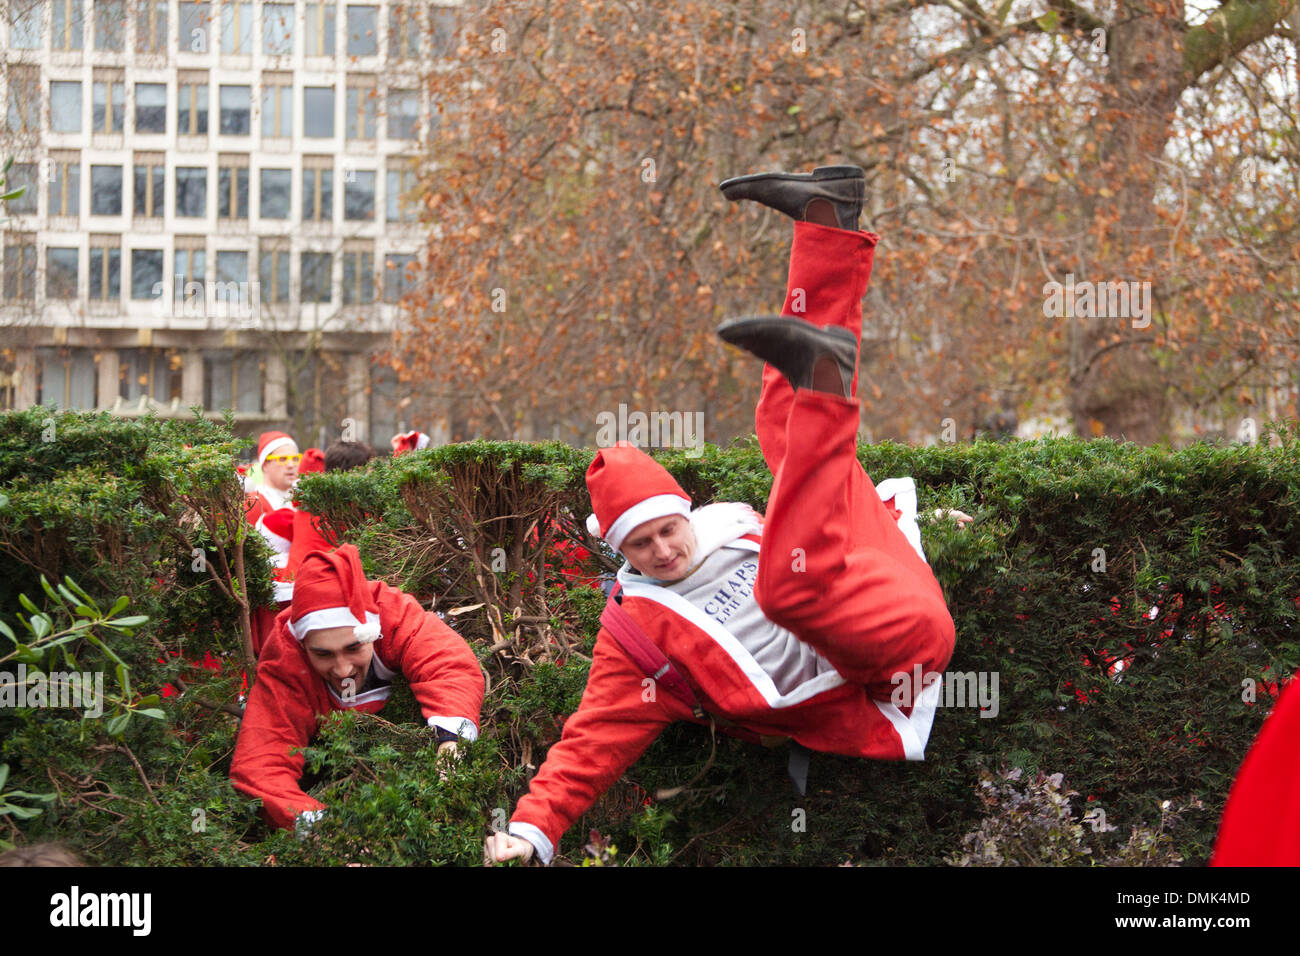 Londra, Regno Unito. 14 dicembre 2013 i partecipanti del SantaCon tentare di saltare su di una siepe in Grosvenor Square Gardens al di fuori dell'ambasciata statunitense. Credito: Nelson pereira/Alamy Live News Foto Stock